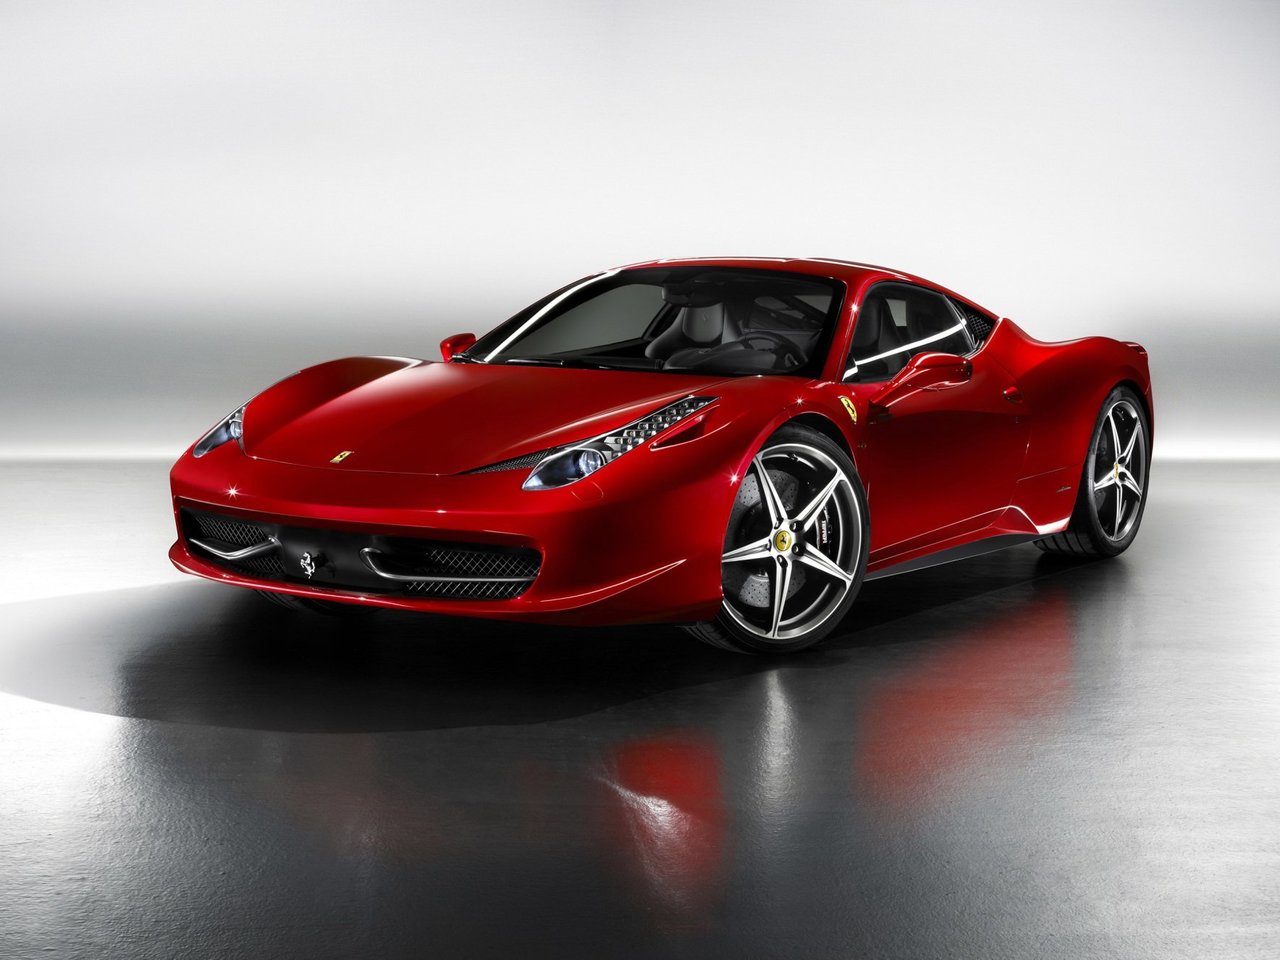 Расход газа одной комплектации купе Ferrari 458. Разница стоимости заправки газом и бензином. Автономный пробег до и после установки ГБО.